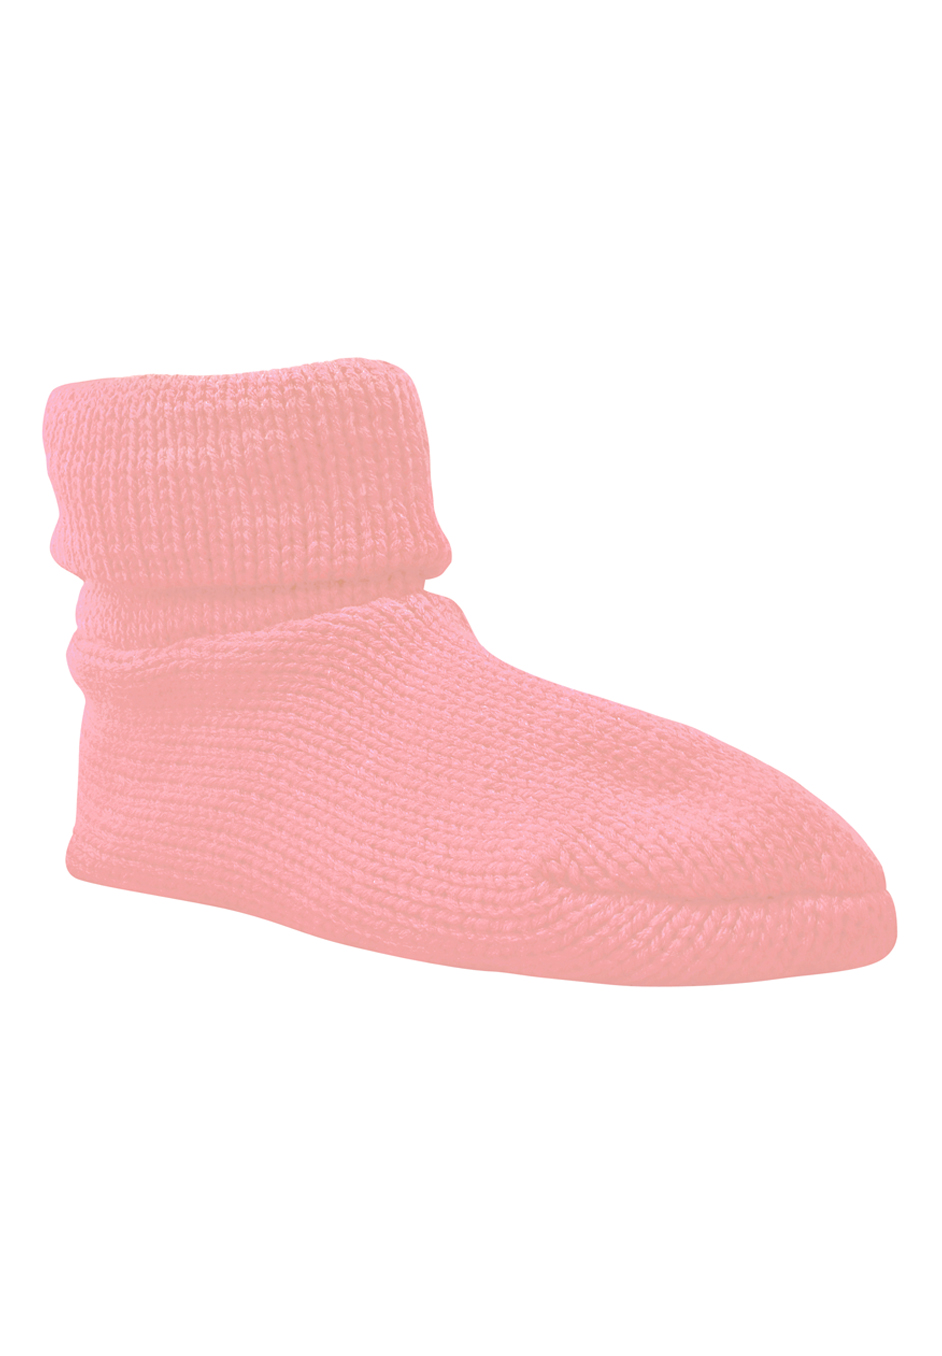 Cuff Slipper Sock by Muk Luks® | Plus Size Slippers | Full Beauty